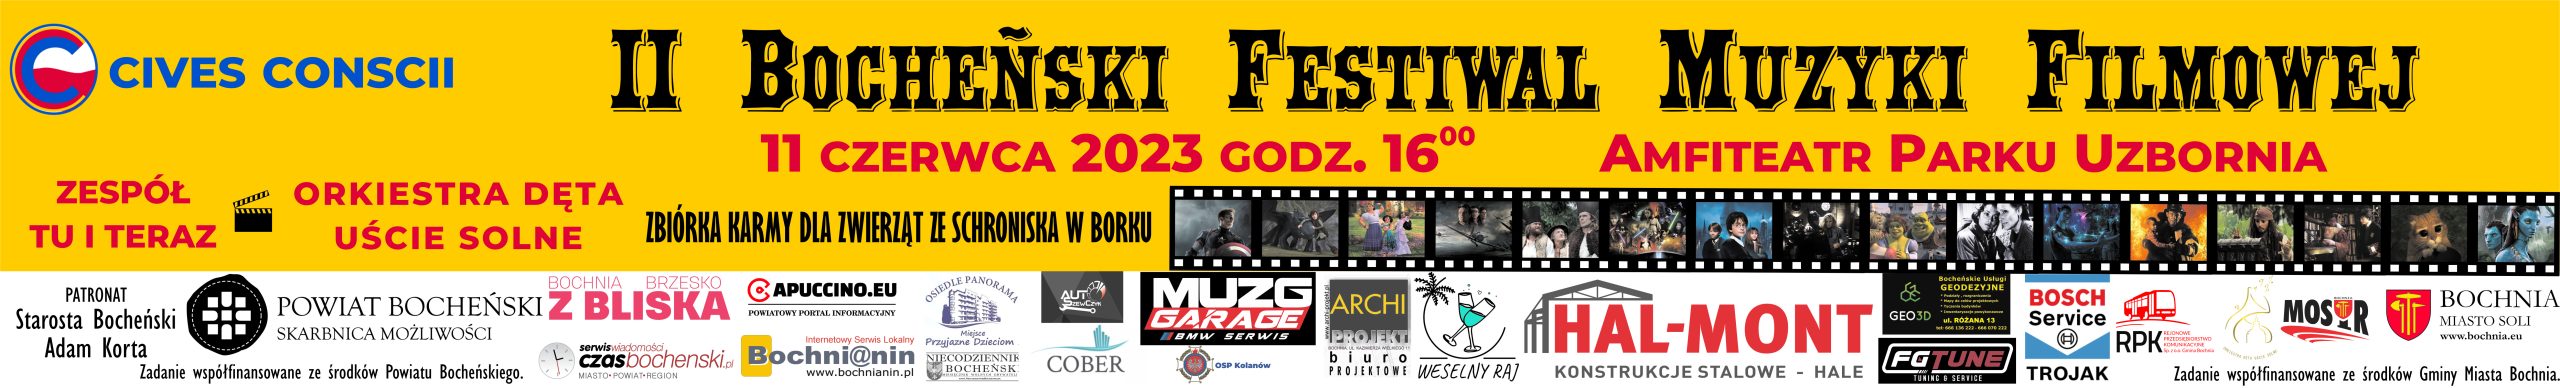 I Bocheński Festiwal Muzyki Filmowej